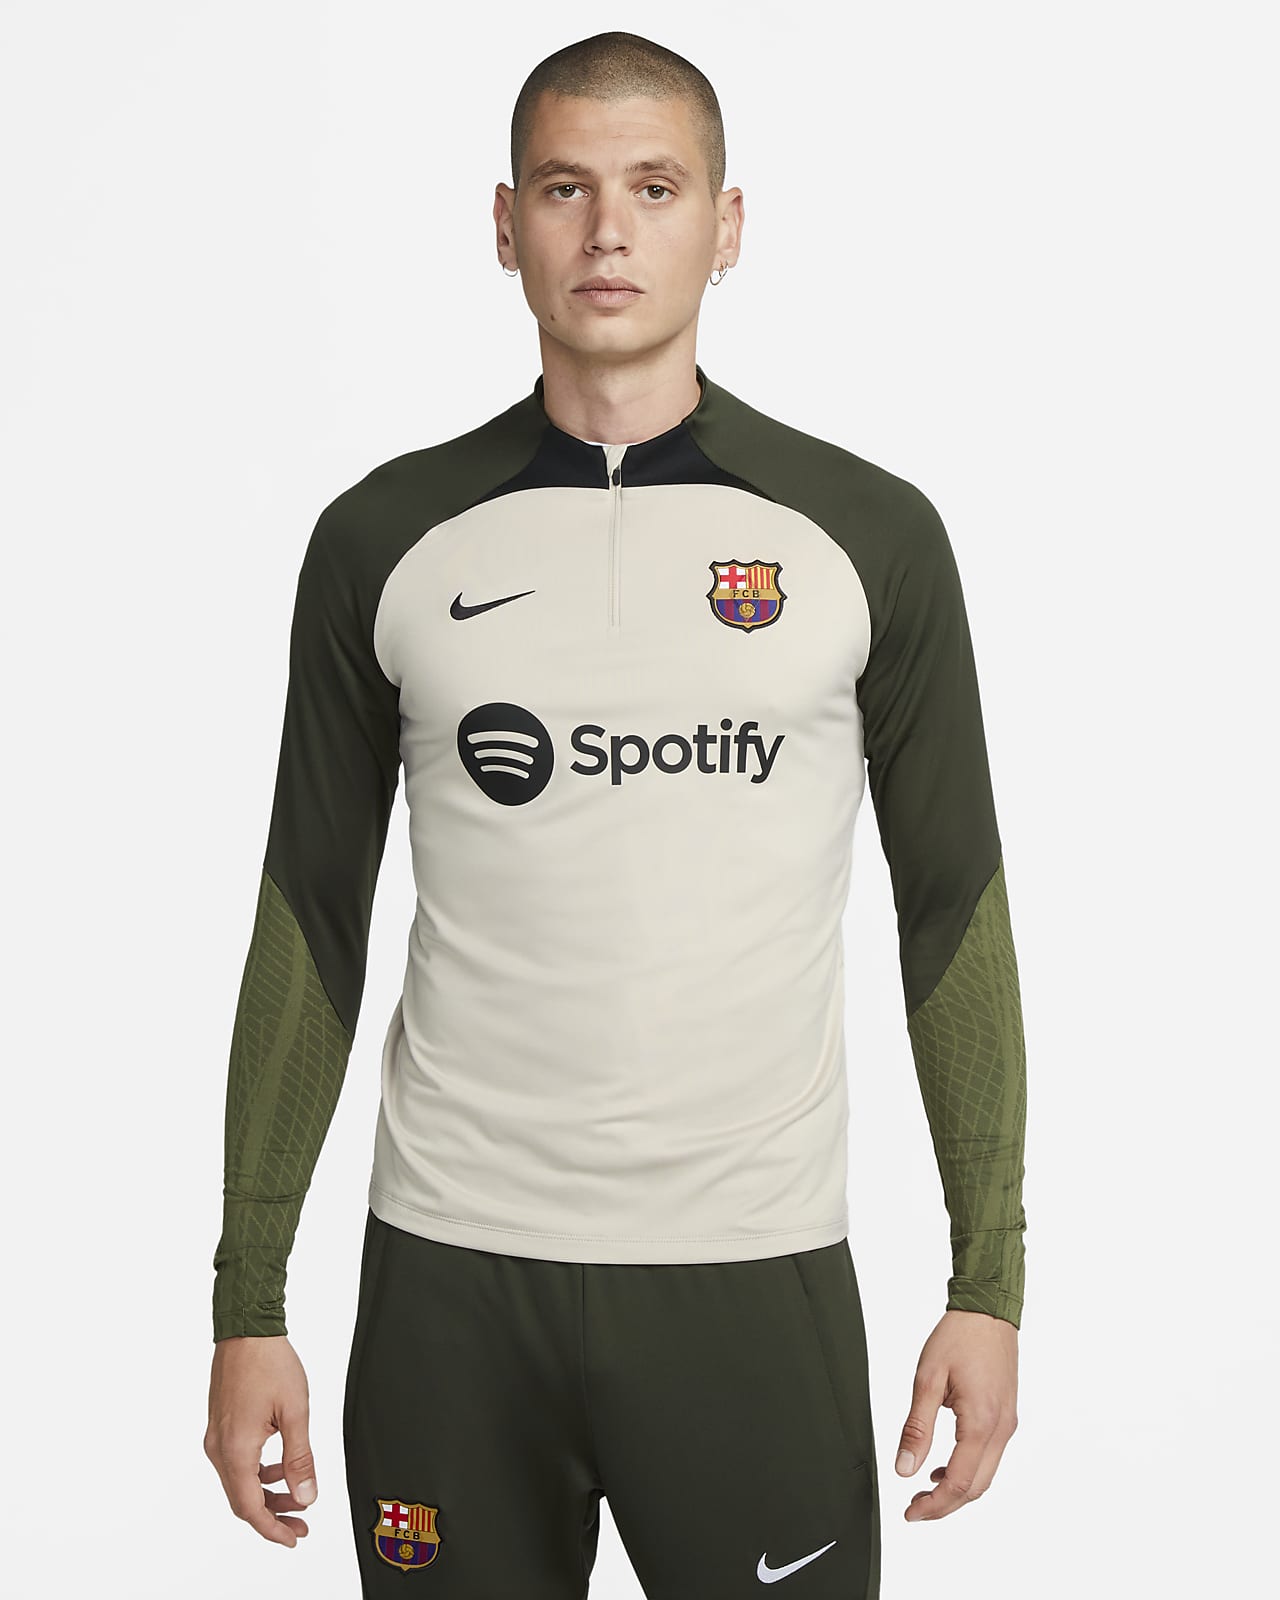 Ανδρική ποδοσφαιρική μπλούζα προπόνησης Nike Dri-FIT Μπαρτσελόνα Strike